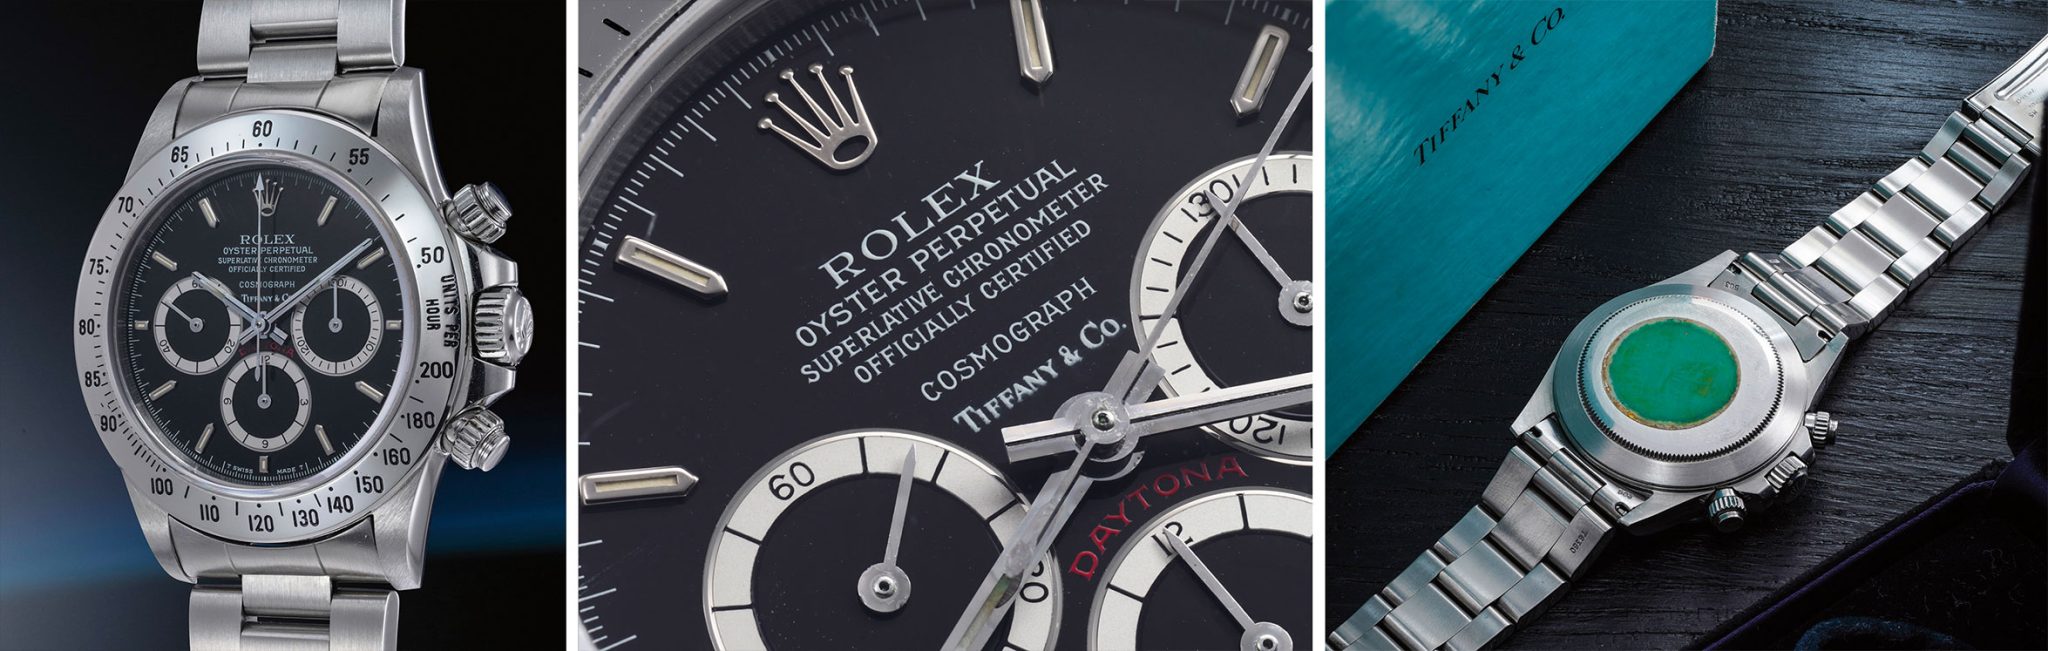 Phillips-Geneva-Watch-Auktion-XVII-Highlights-Rolex-144